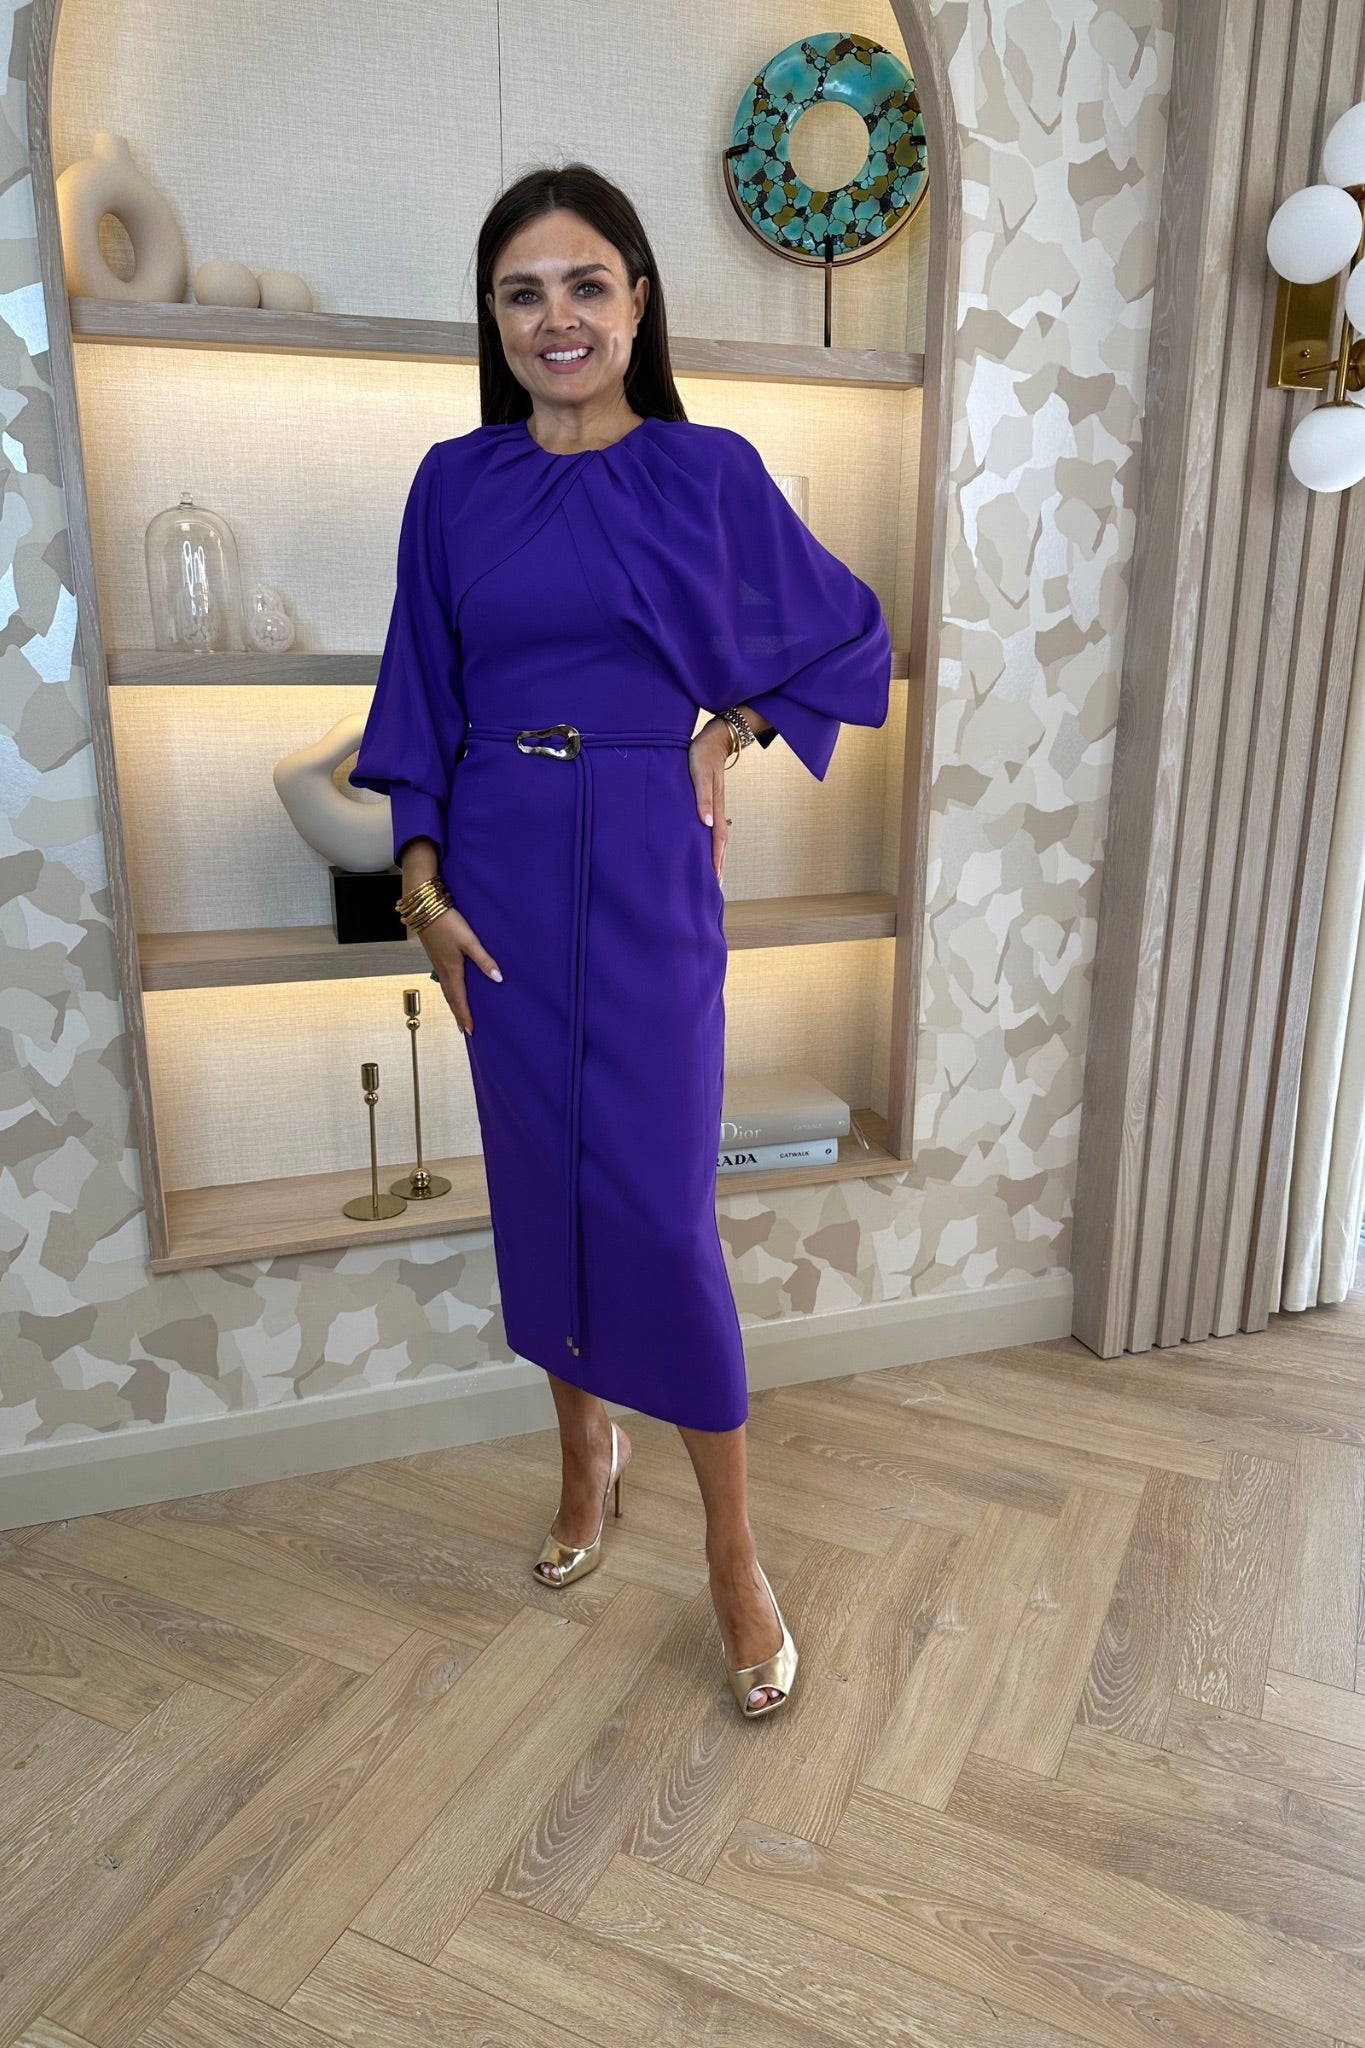 Kayla Cape Style Dress In Purple - The Walk in Wardrobe